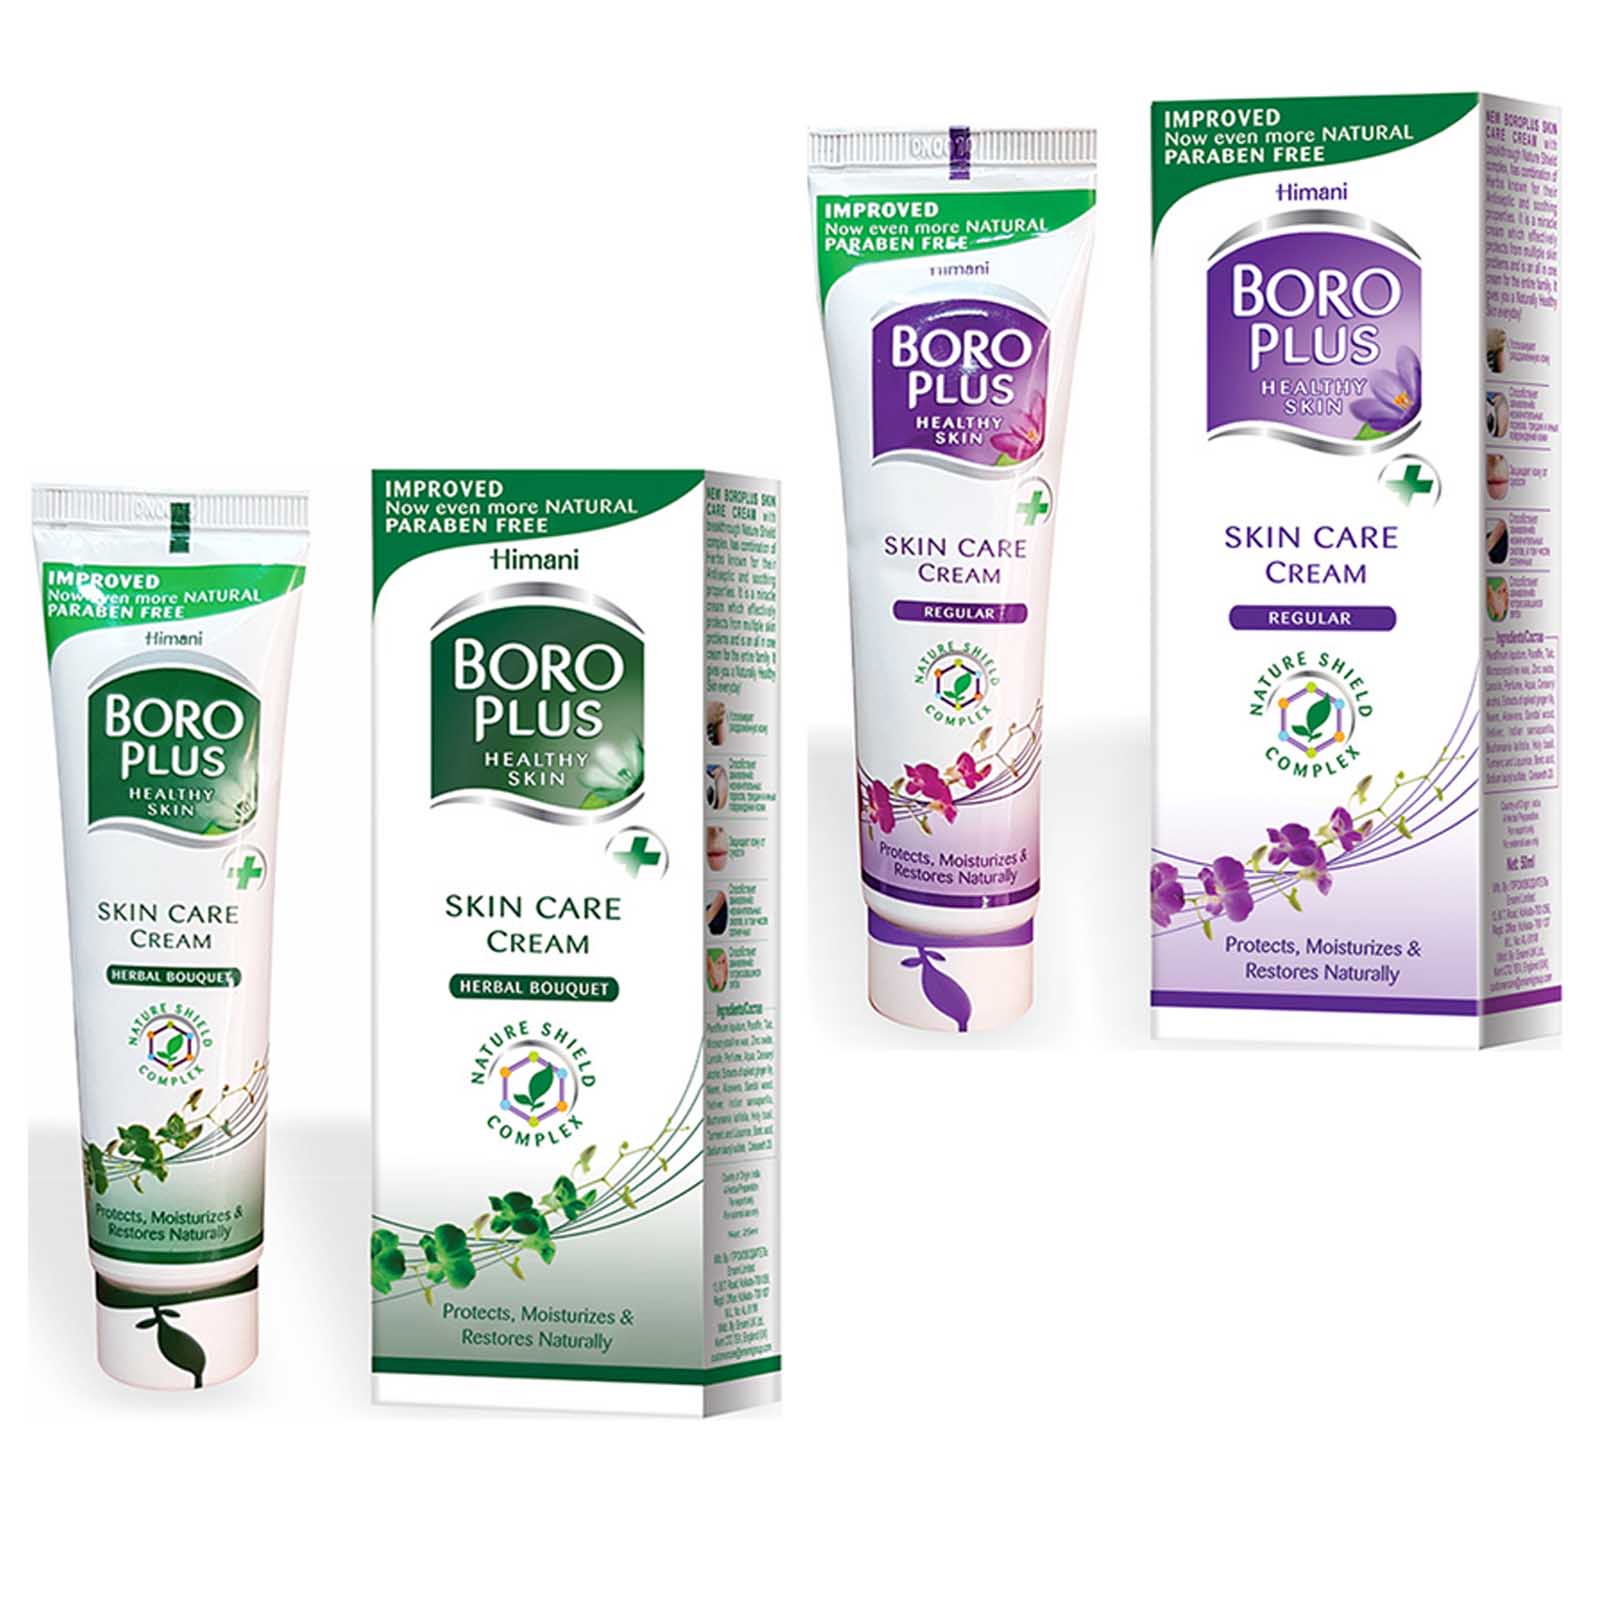 Boro Plus Pflegecreme Regular + Herbal Bouquet Creme Hautpflege Handpflege